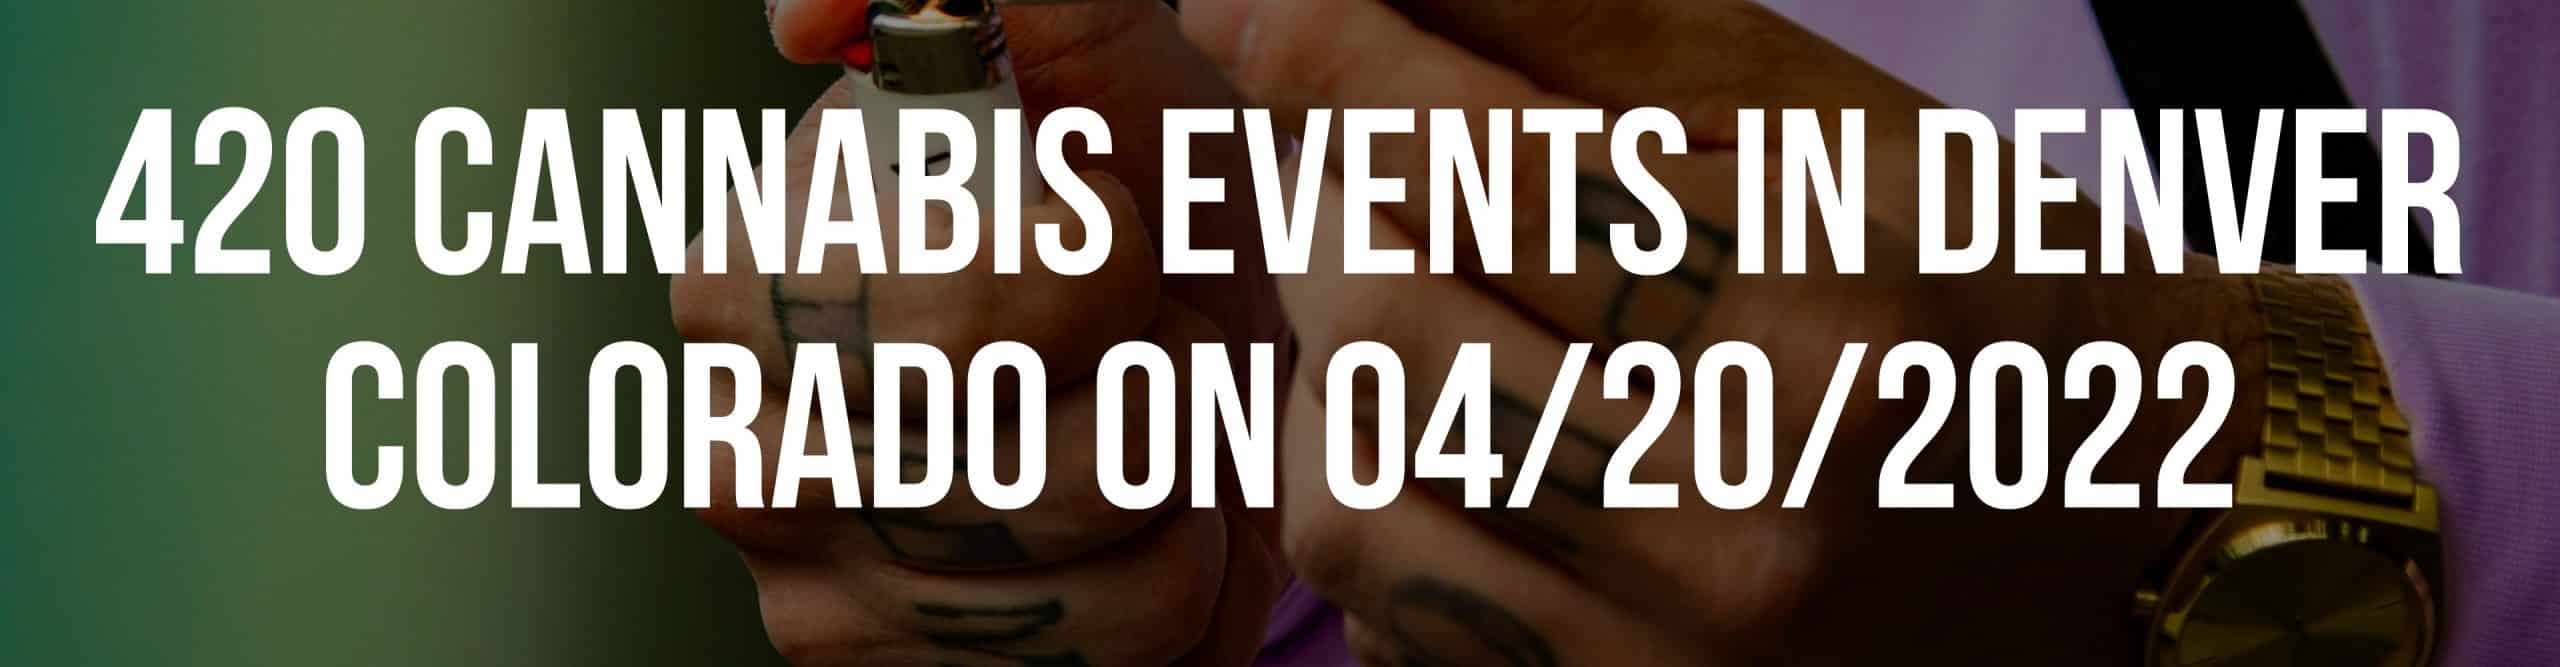 420 cannabis events in Denver Colorado on 04/20/2022